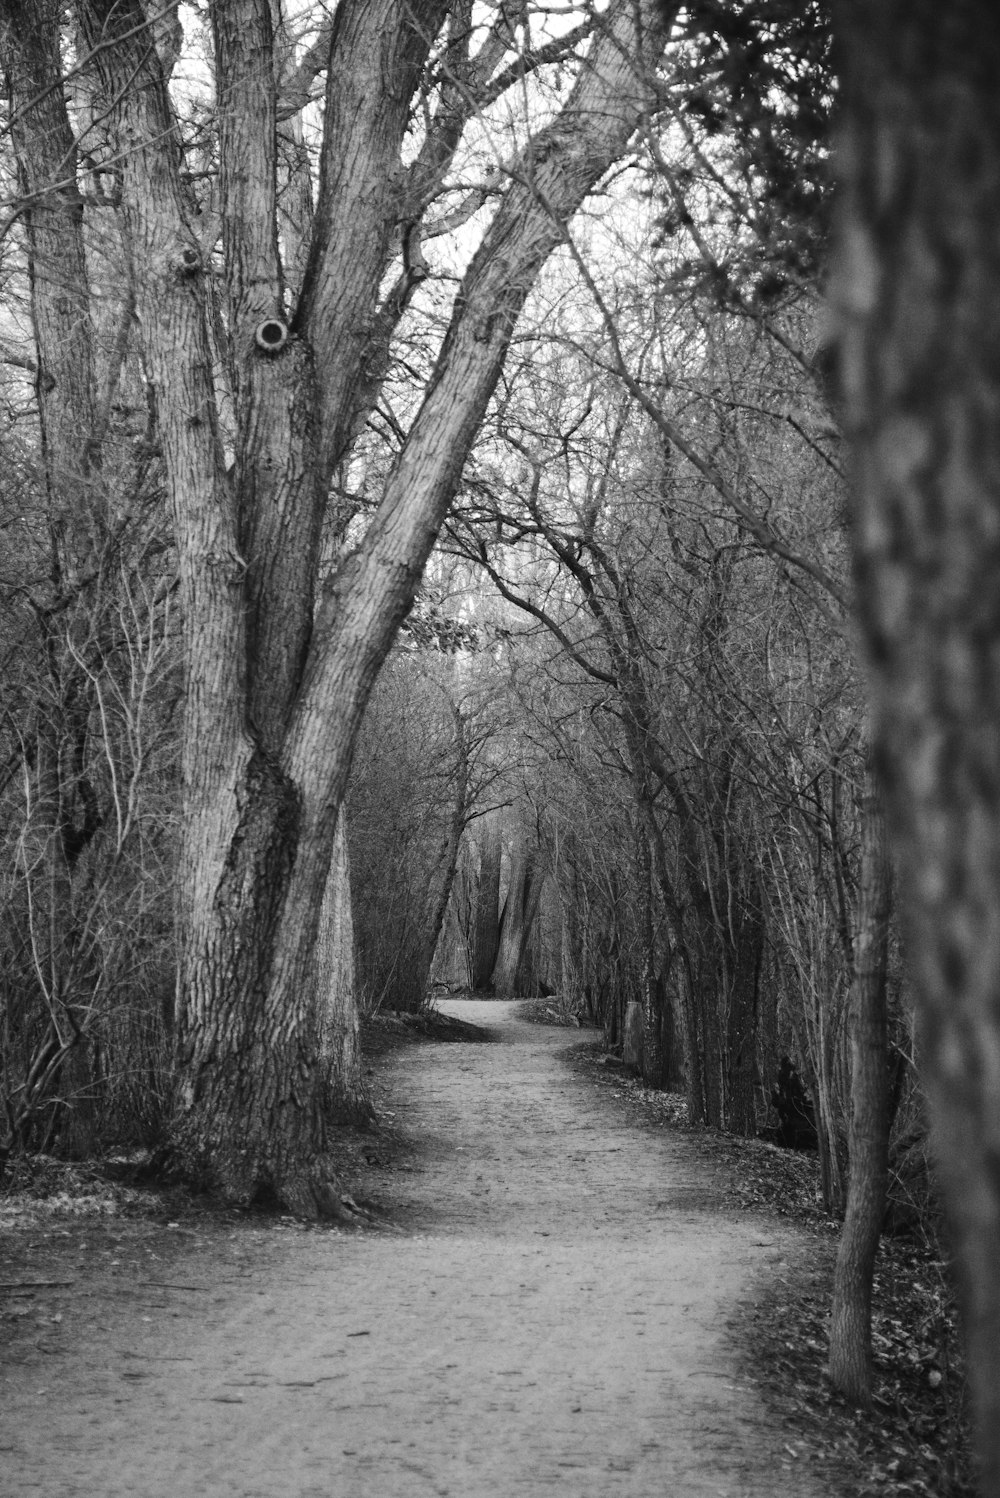 Foto in scala di grigi del sentiero tra gli alberi